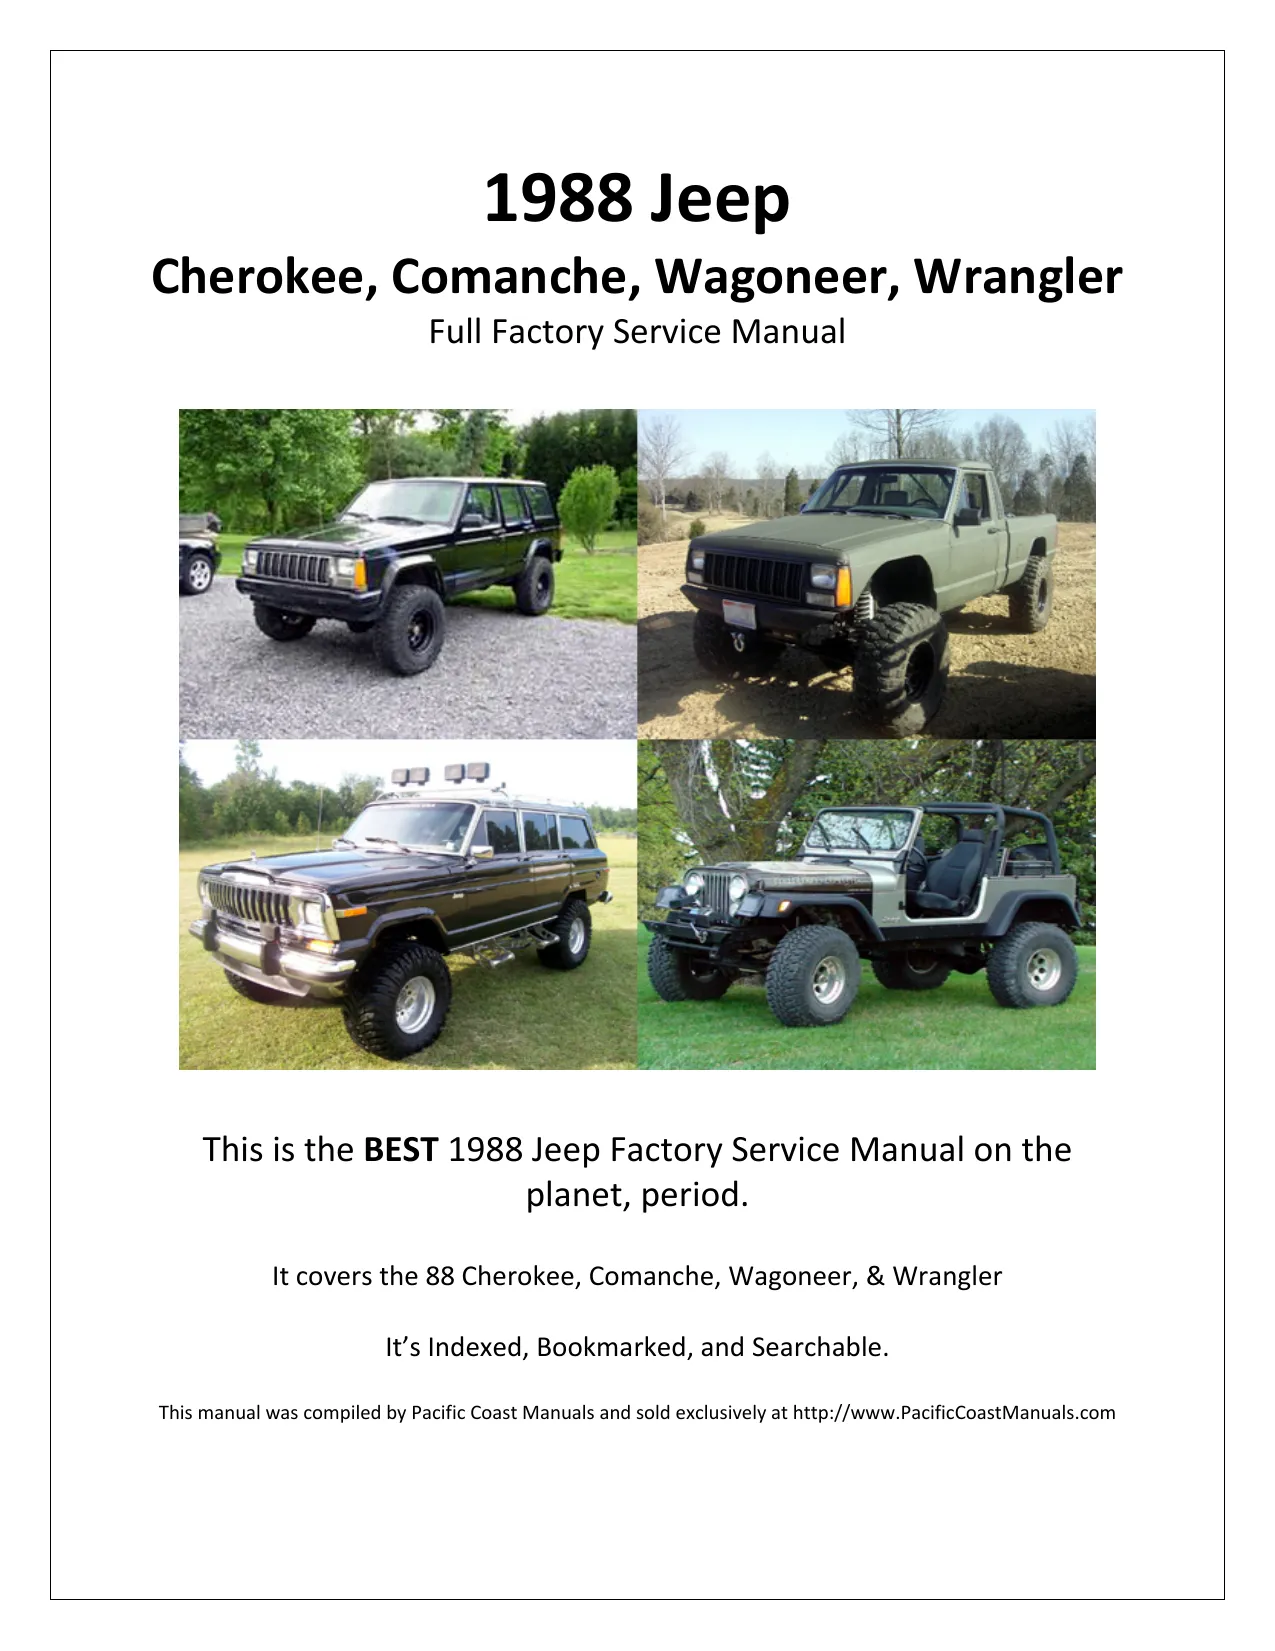 1988 Jeep Cherokee repair manual Preview image 1